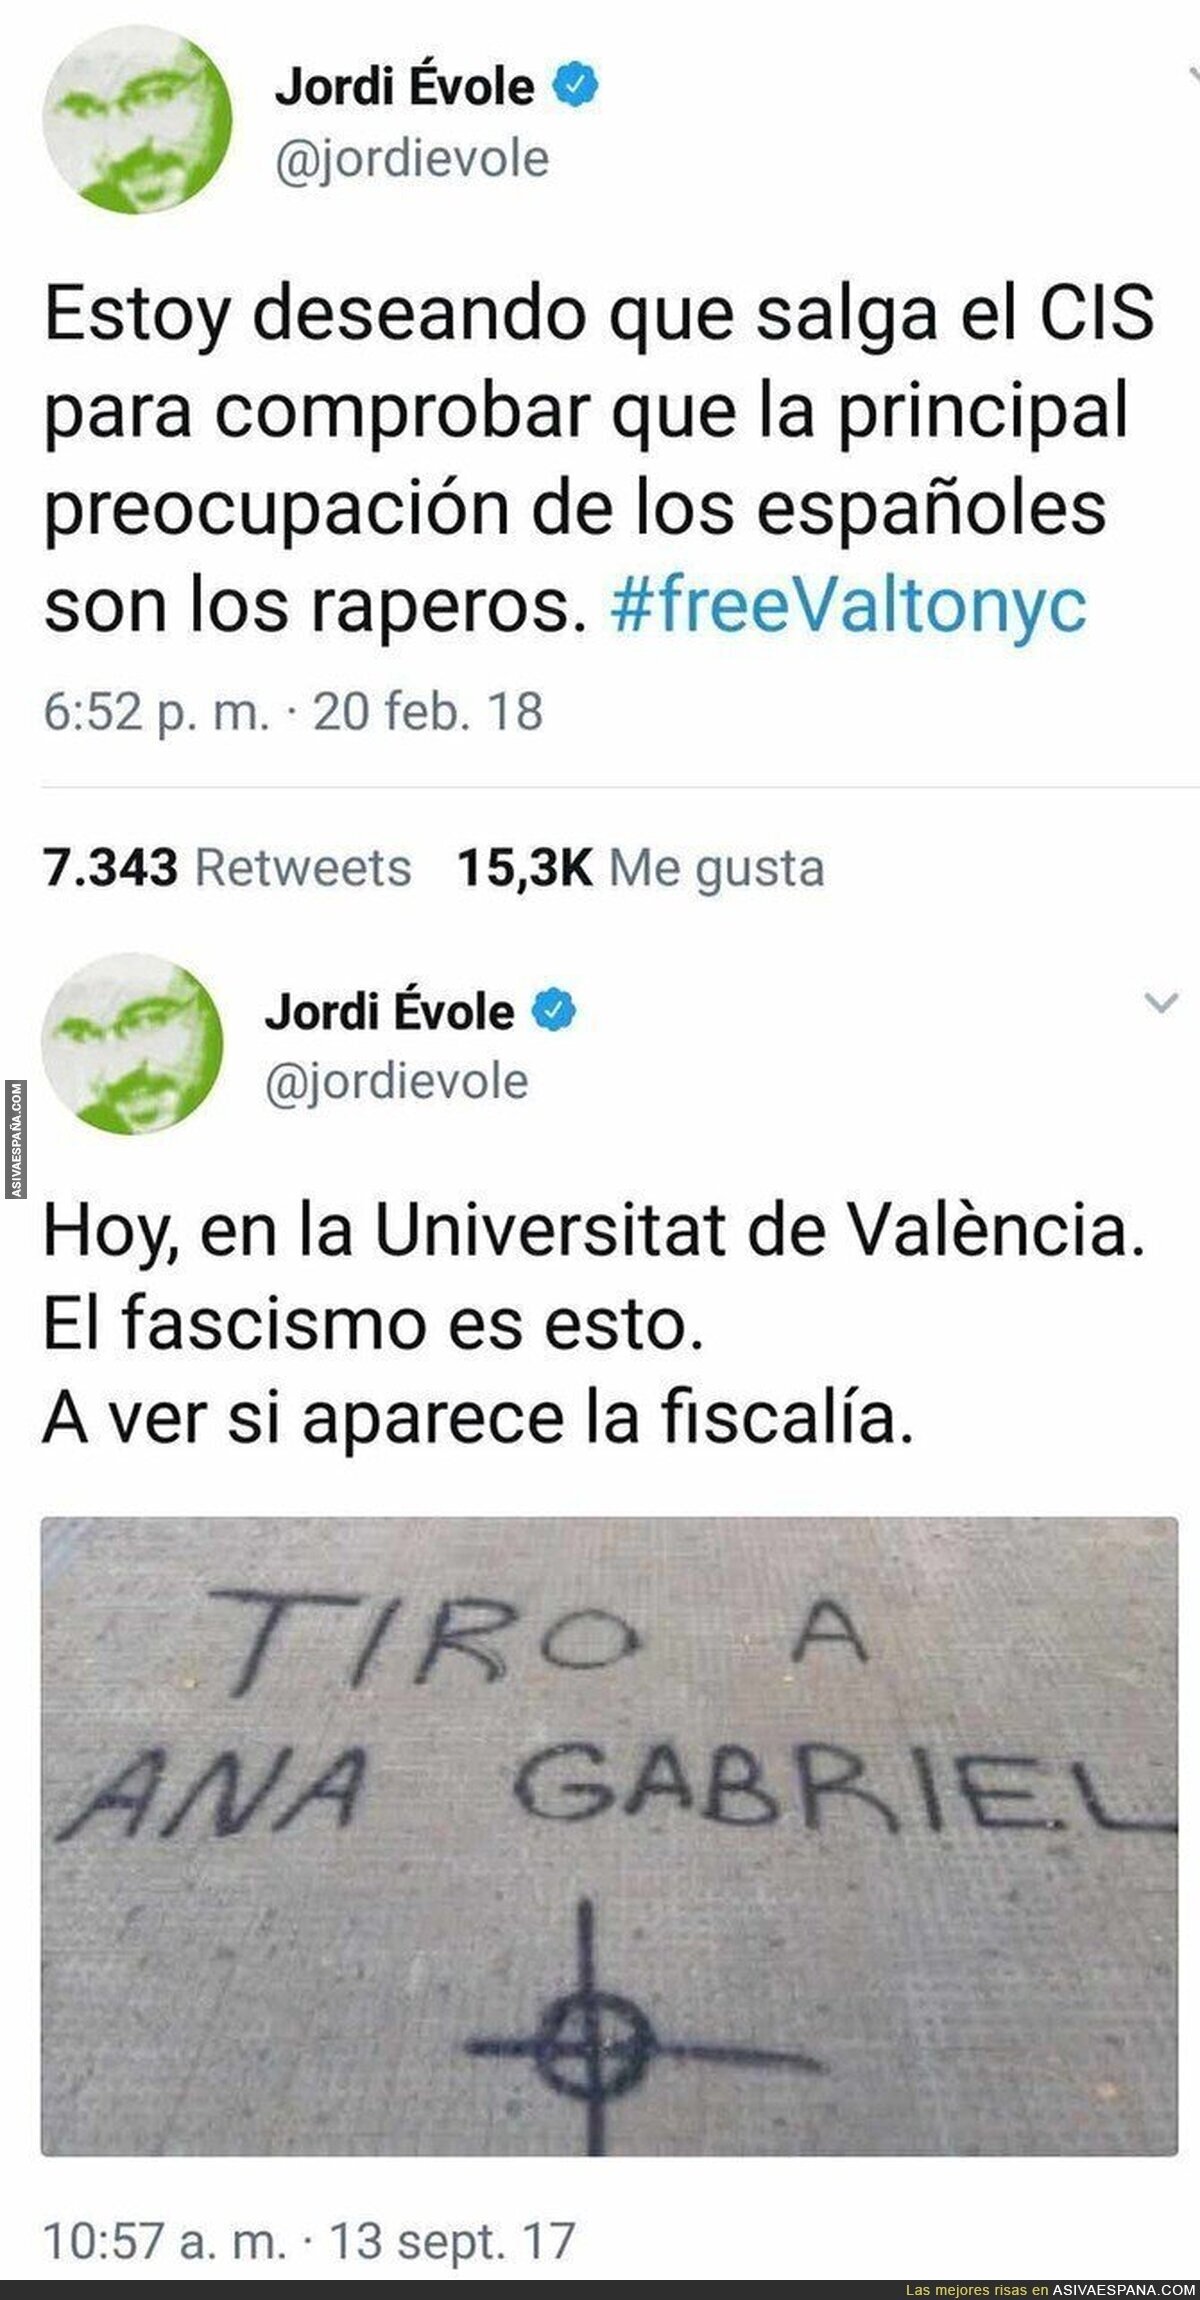 Jordi Évole se auto retrata en dos tuits suyos en pocos meses de diferencia